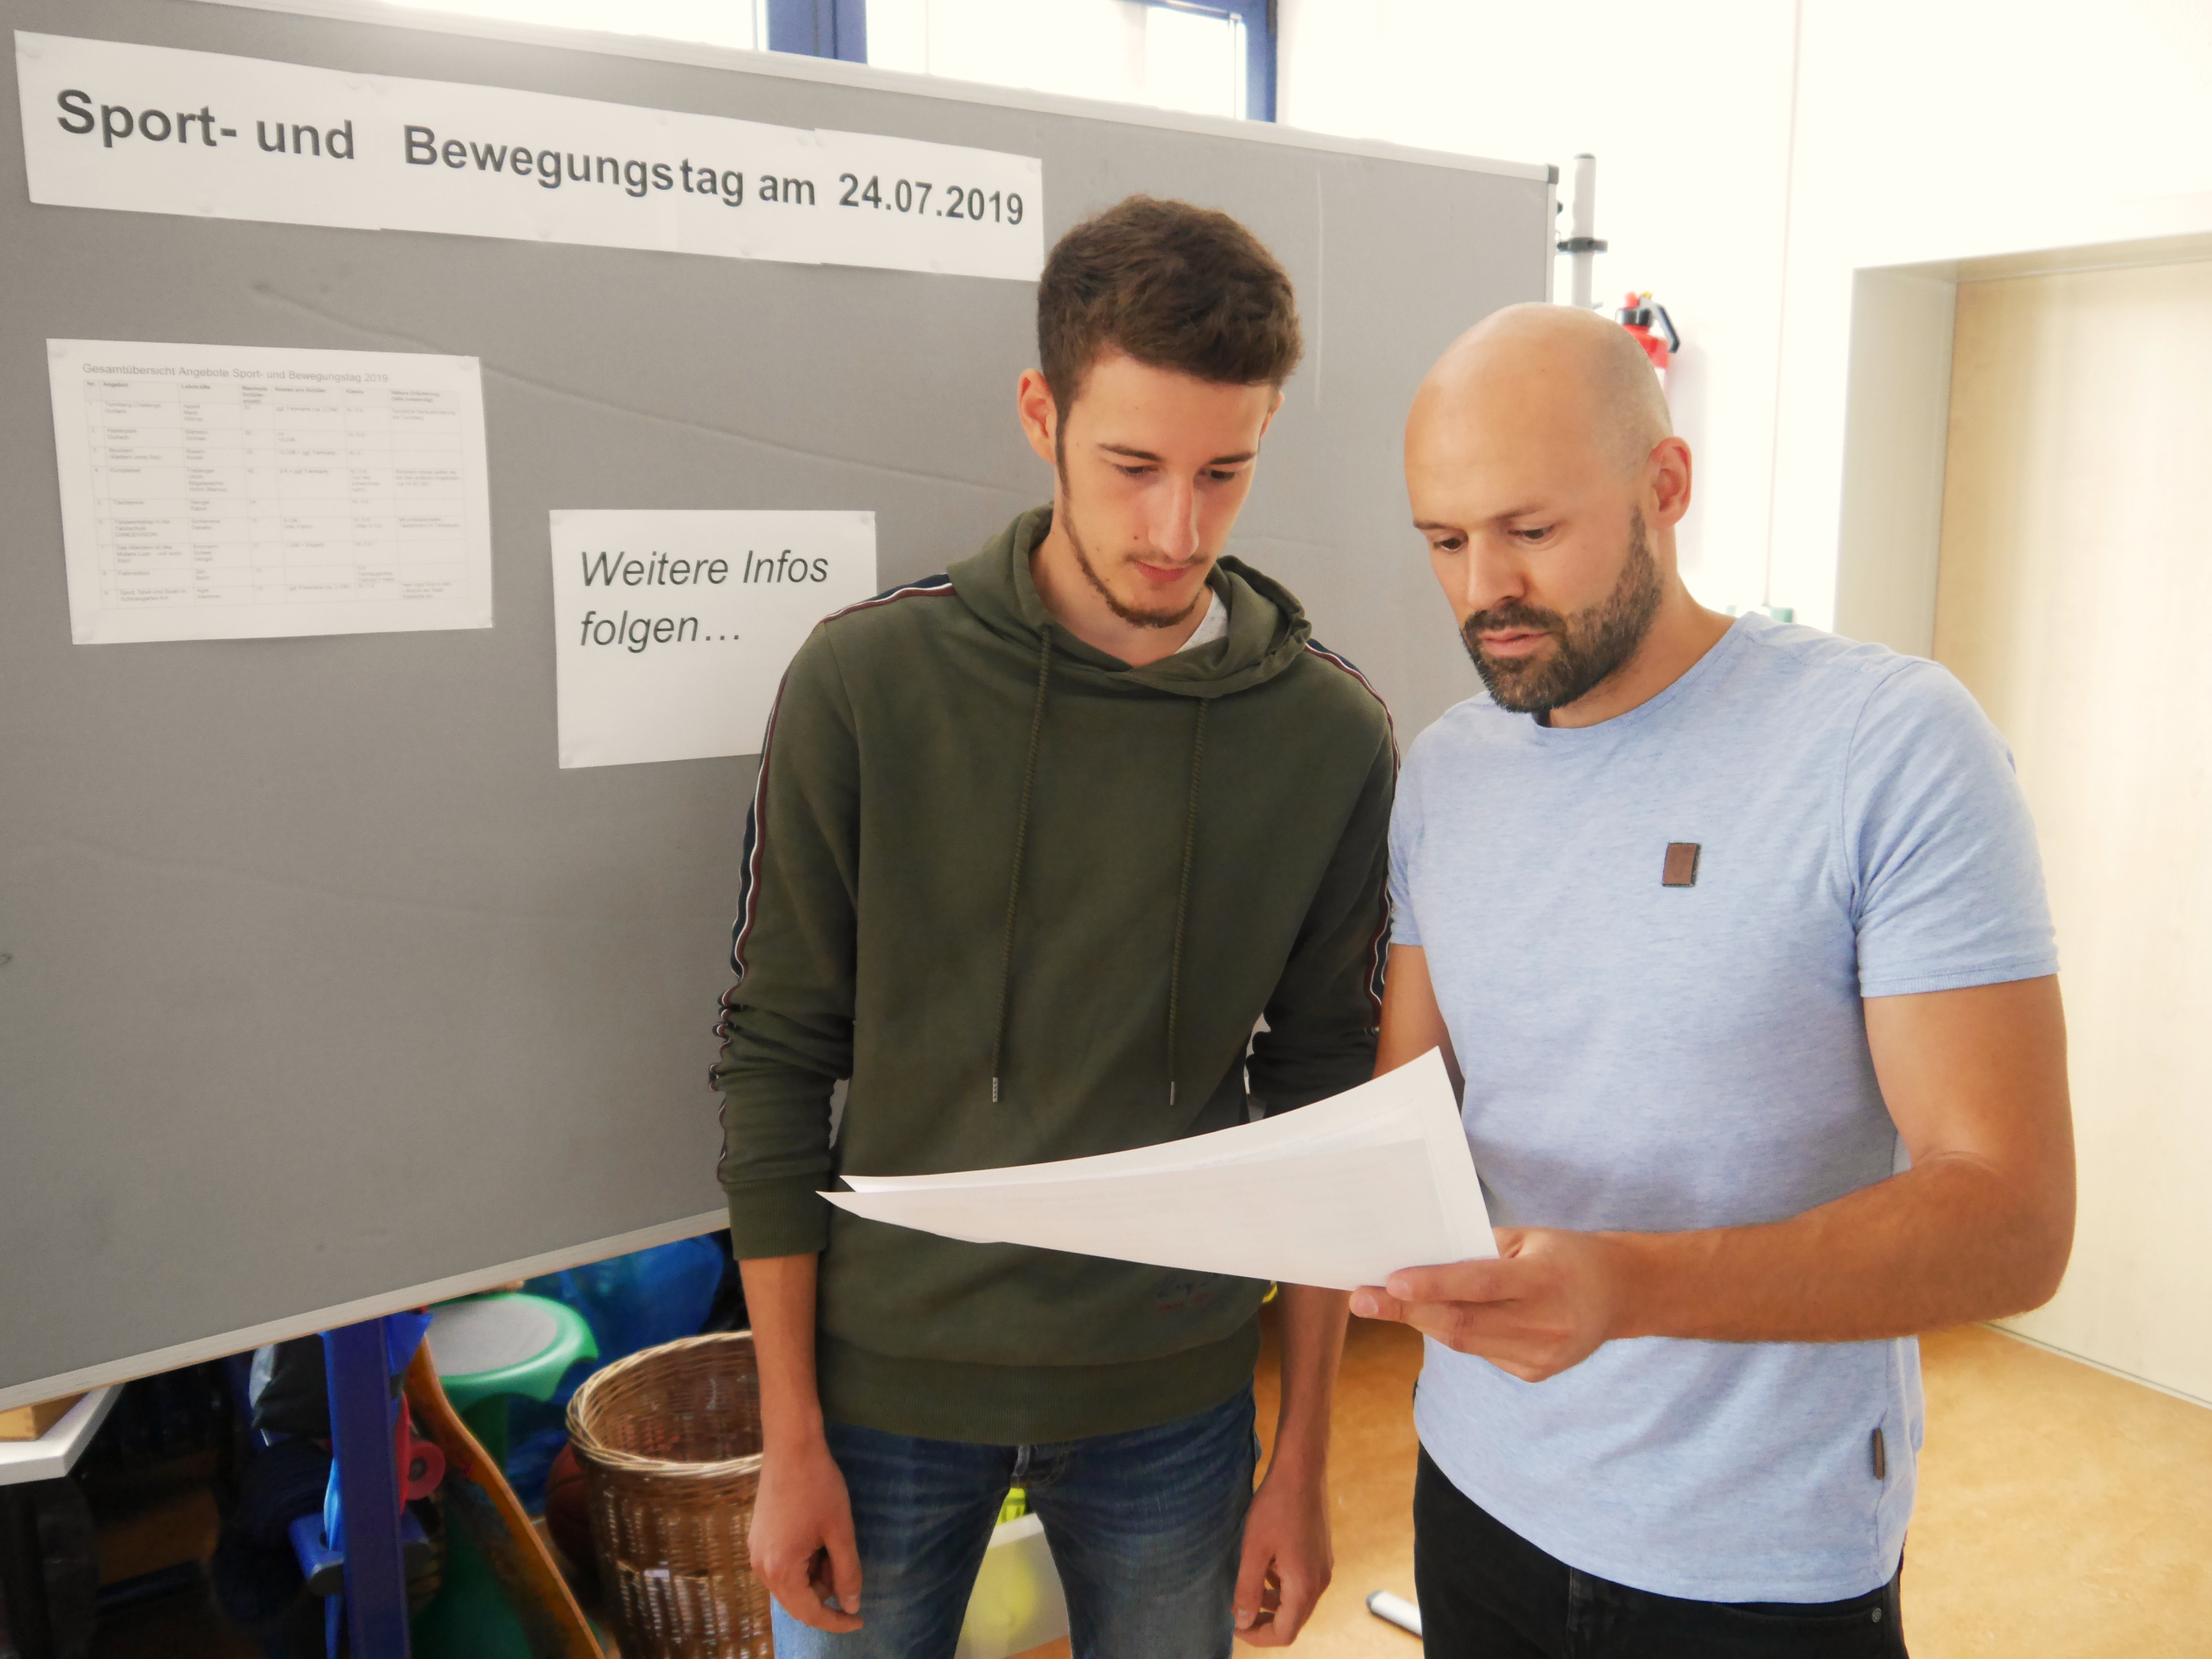  Der Sport- und Bewegungstag steht an: Marius Wöhrl bei den Planungen gemeinsam mit einem Kollegen im Lehrerzimmer. 